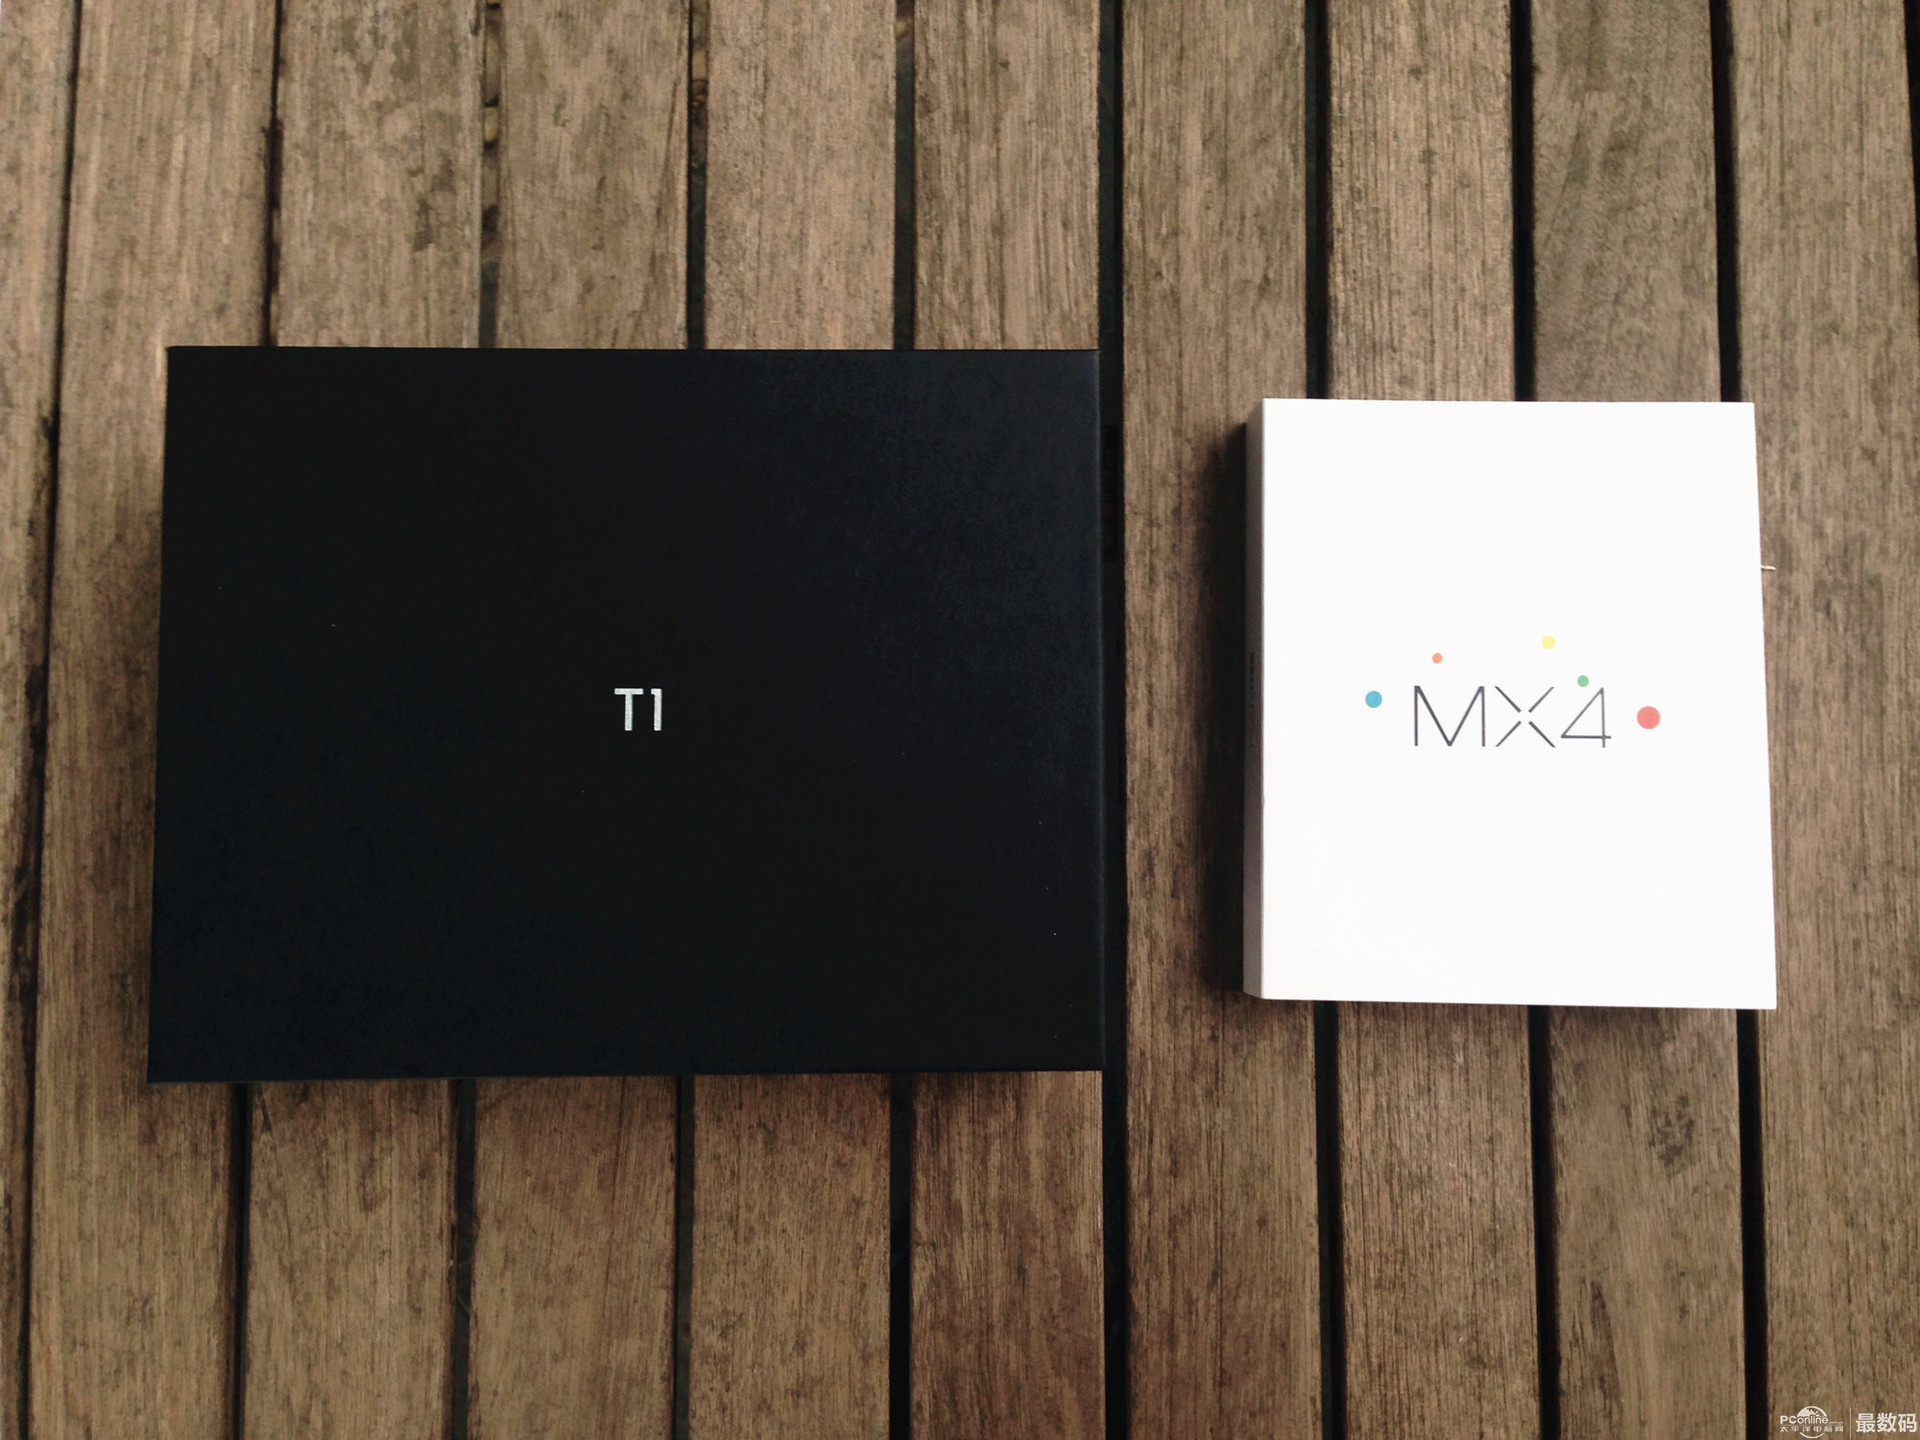 MX4 VS T1